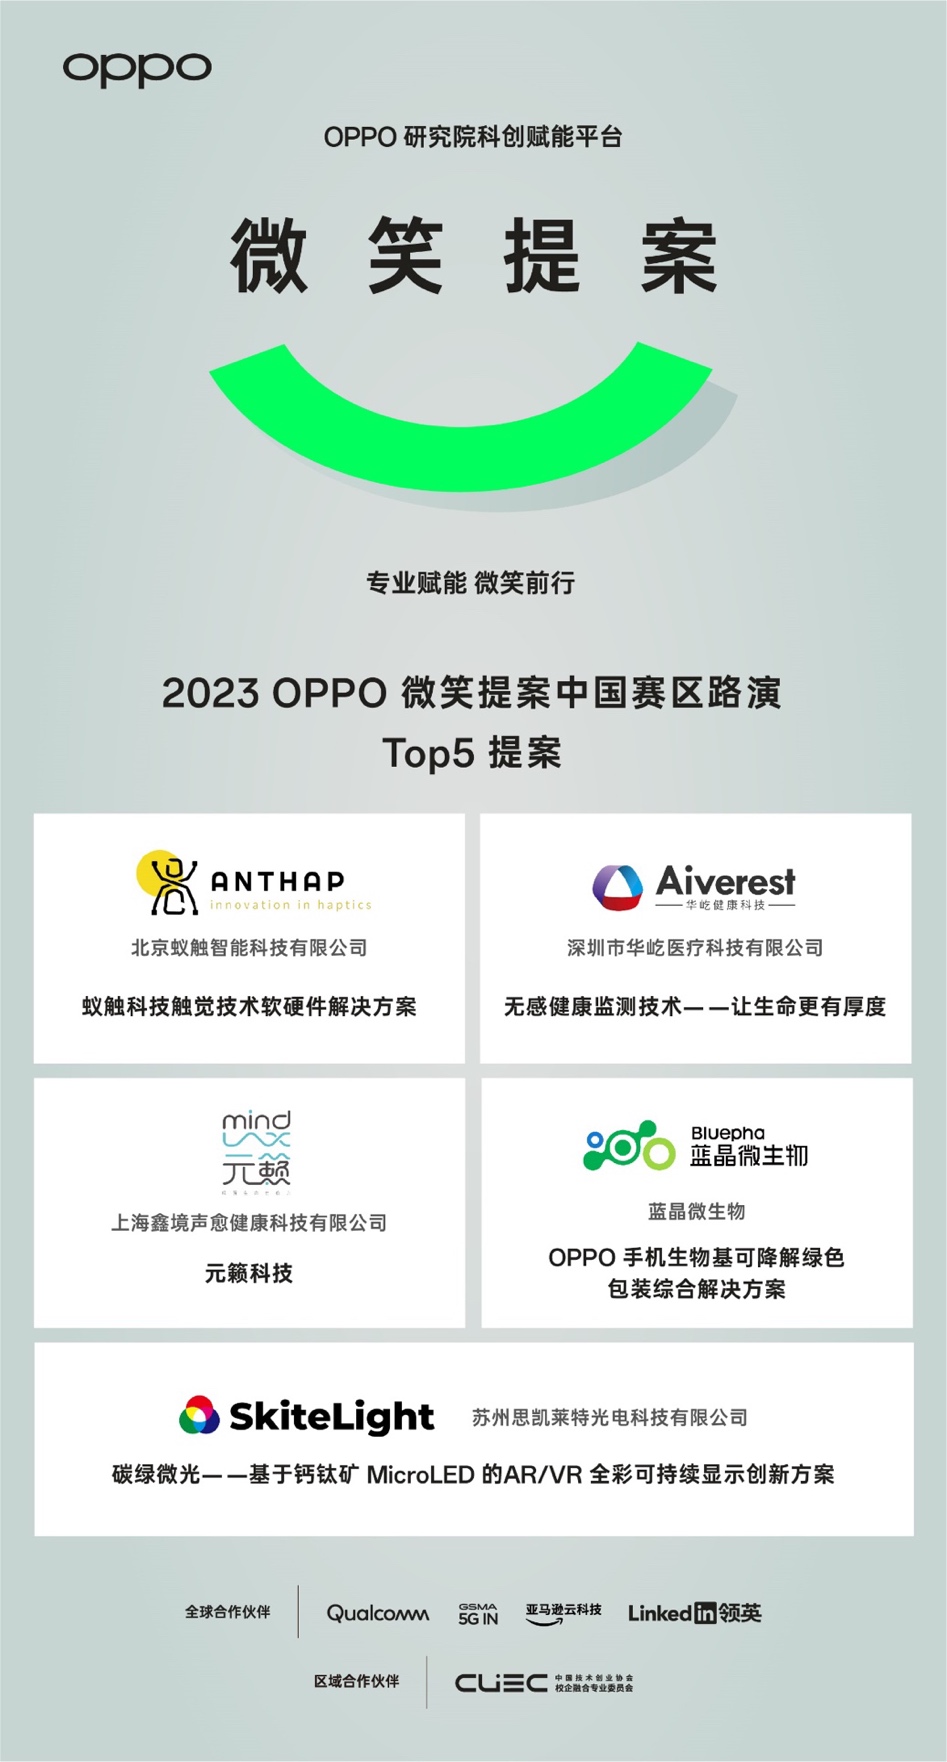 2023 OPPO微笑提案中国赛区路演Top5 提案